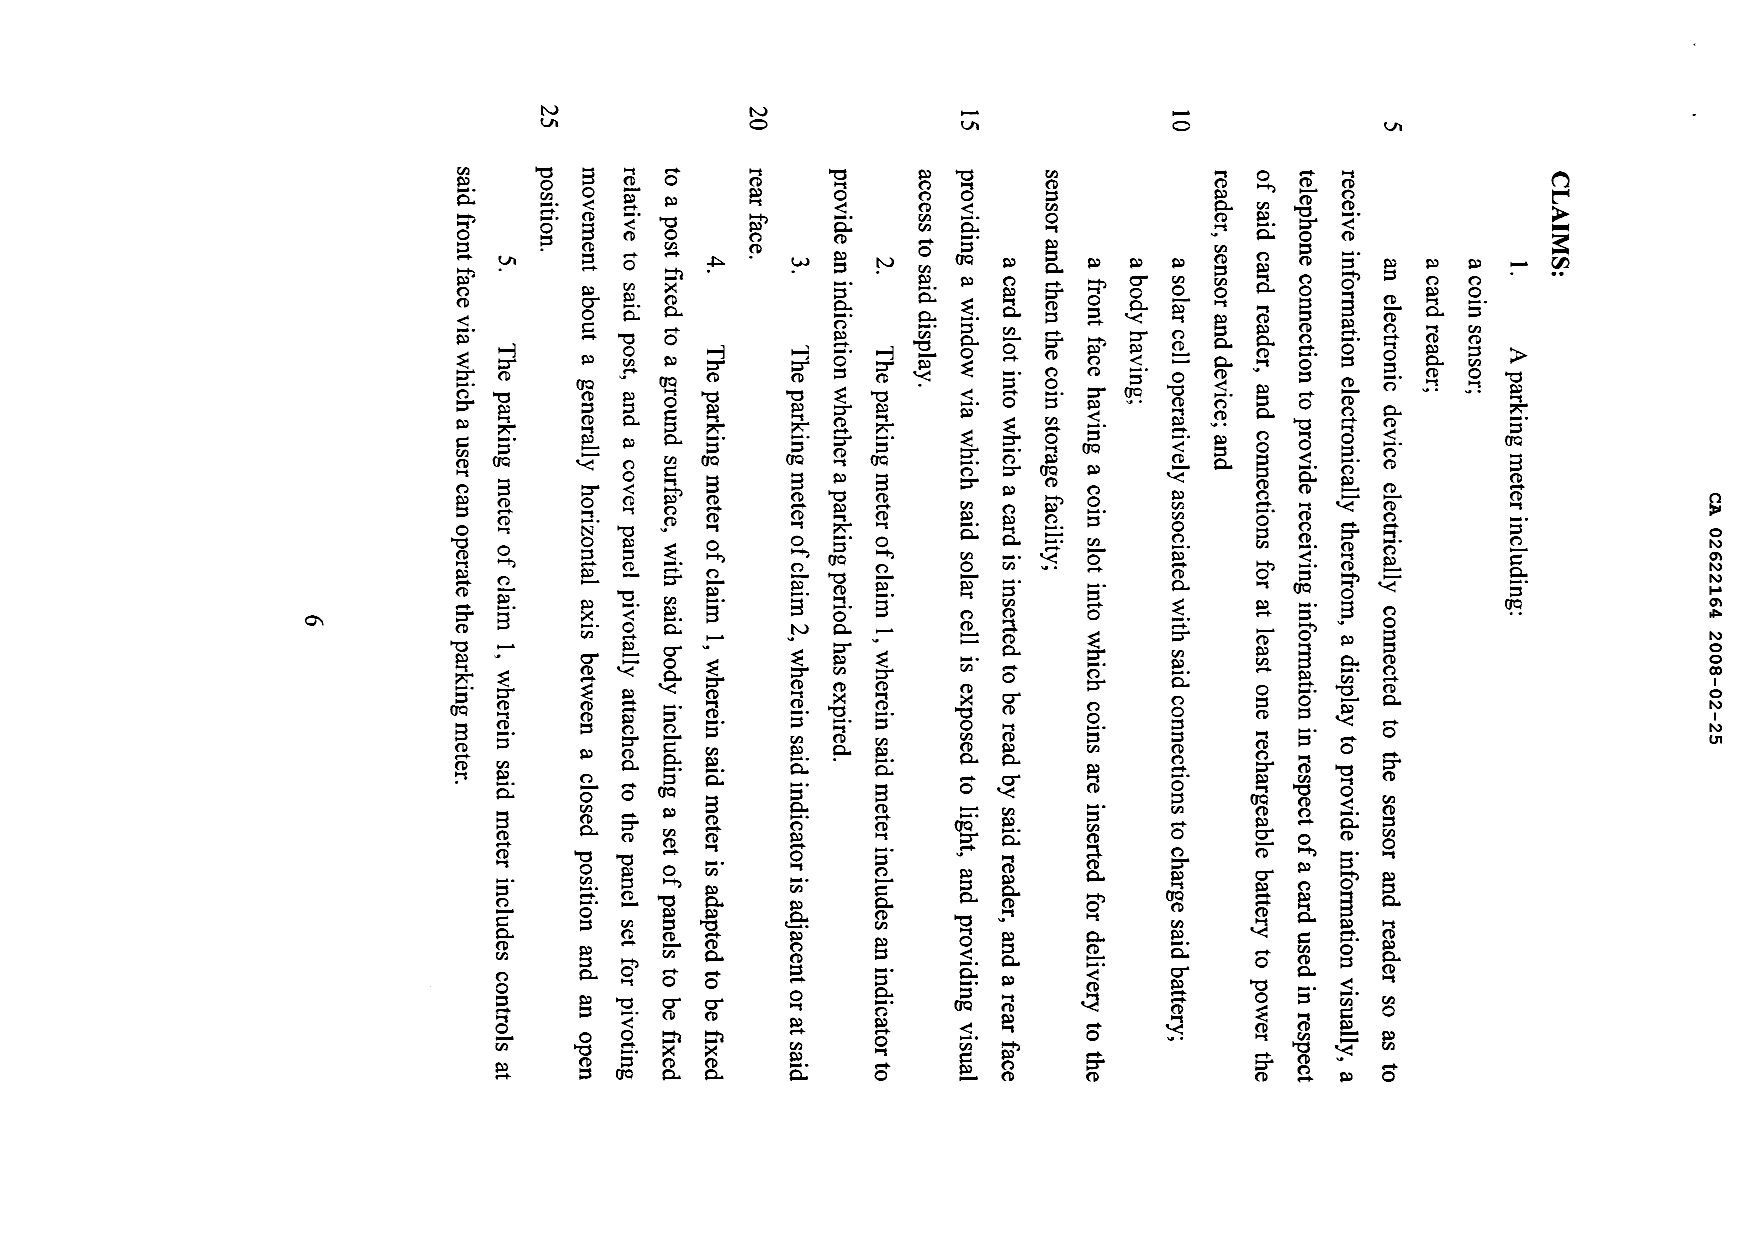 Document de brevet canadien 2622164. Revendications 20071225. Image 1 de 2